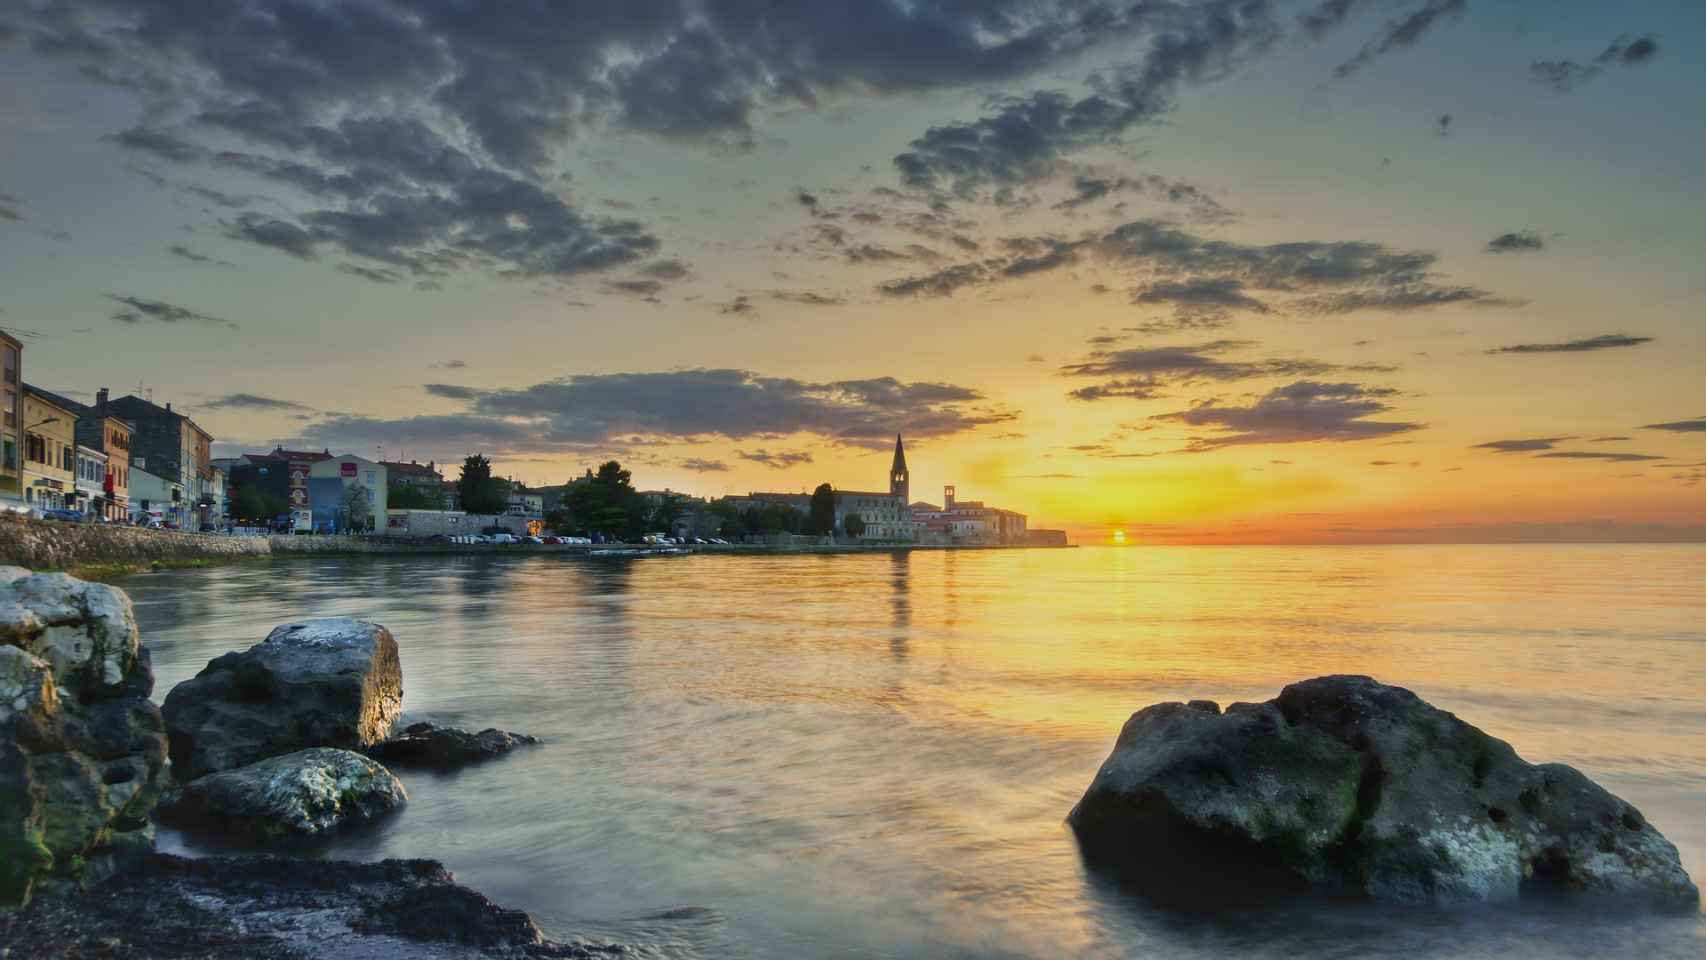 Croacia, descubre por qué es el diamante del mar adriático